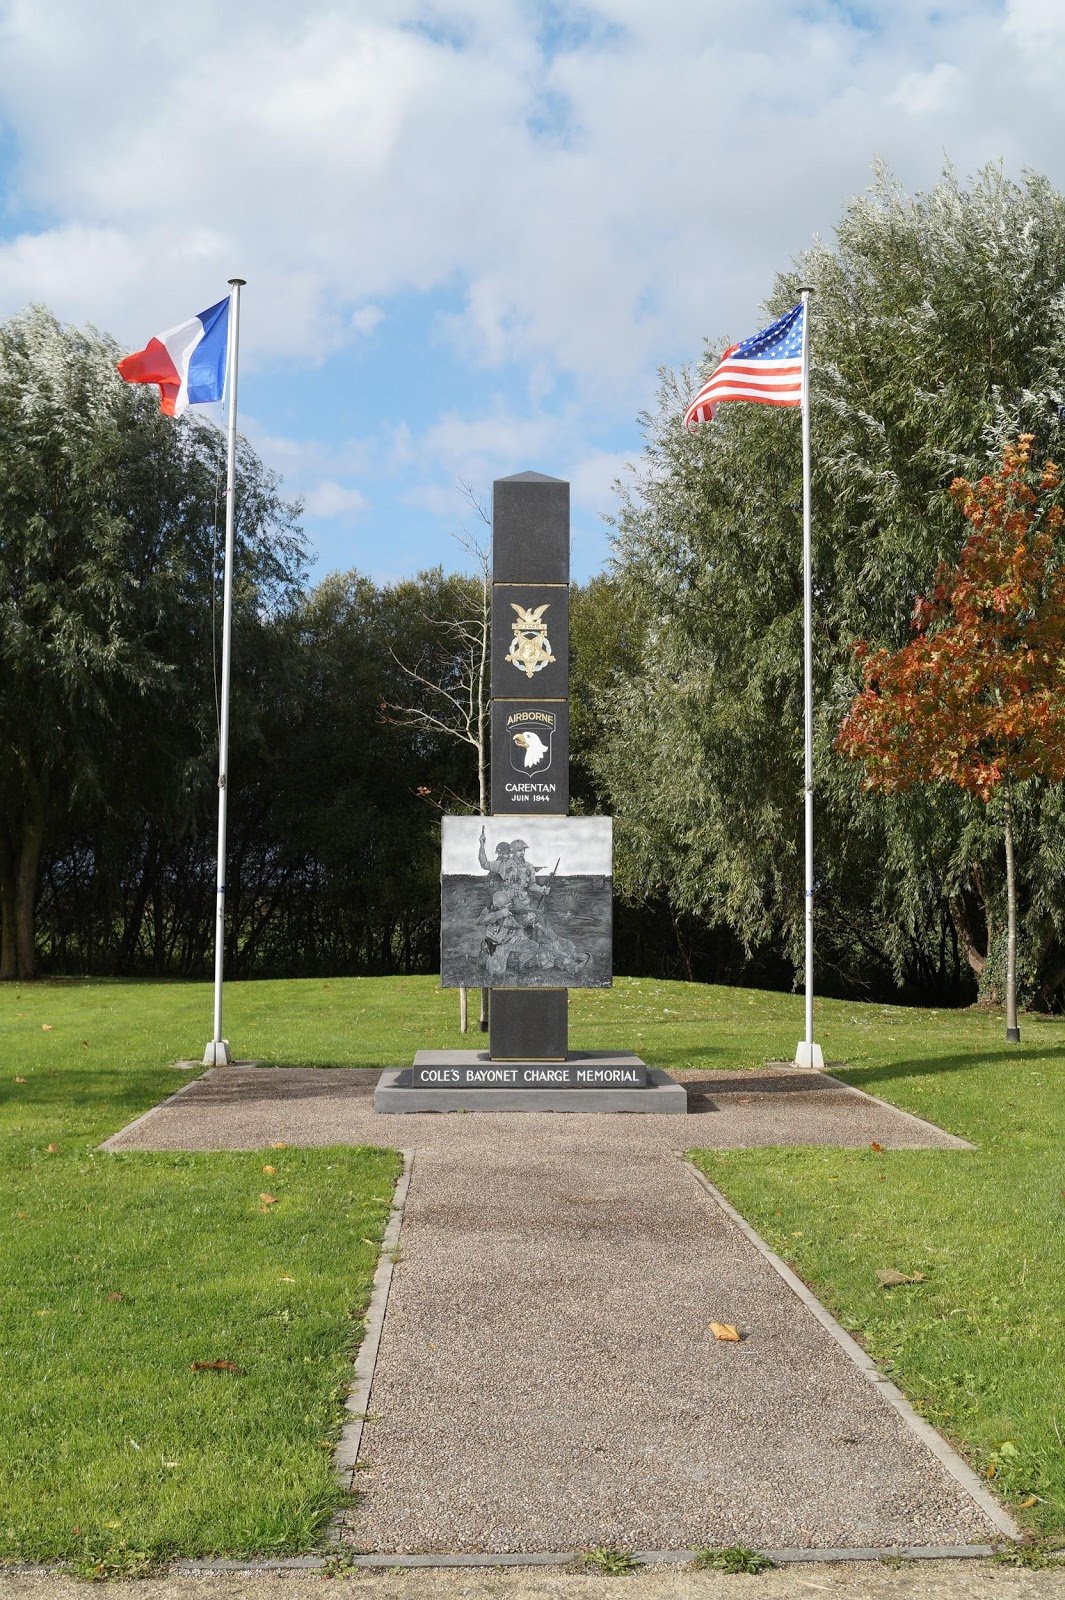 Lieutenant Colonel Cole’s bayonet charge monument